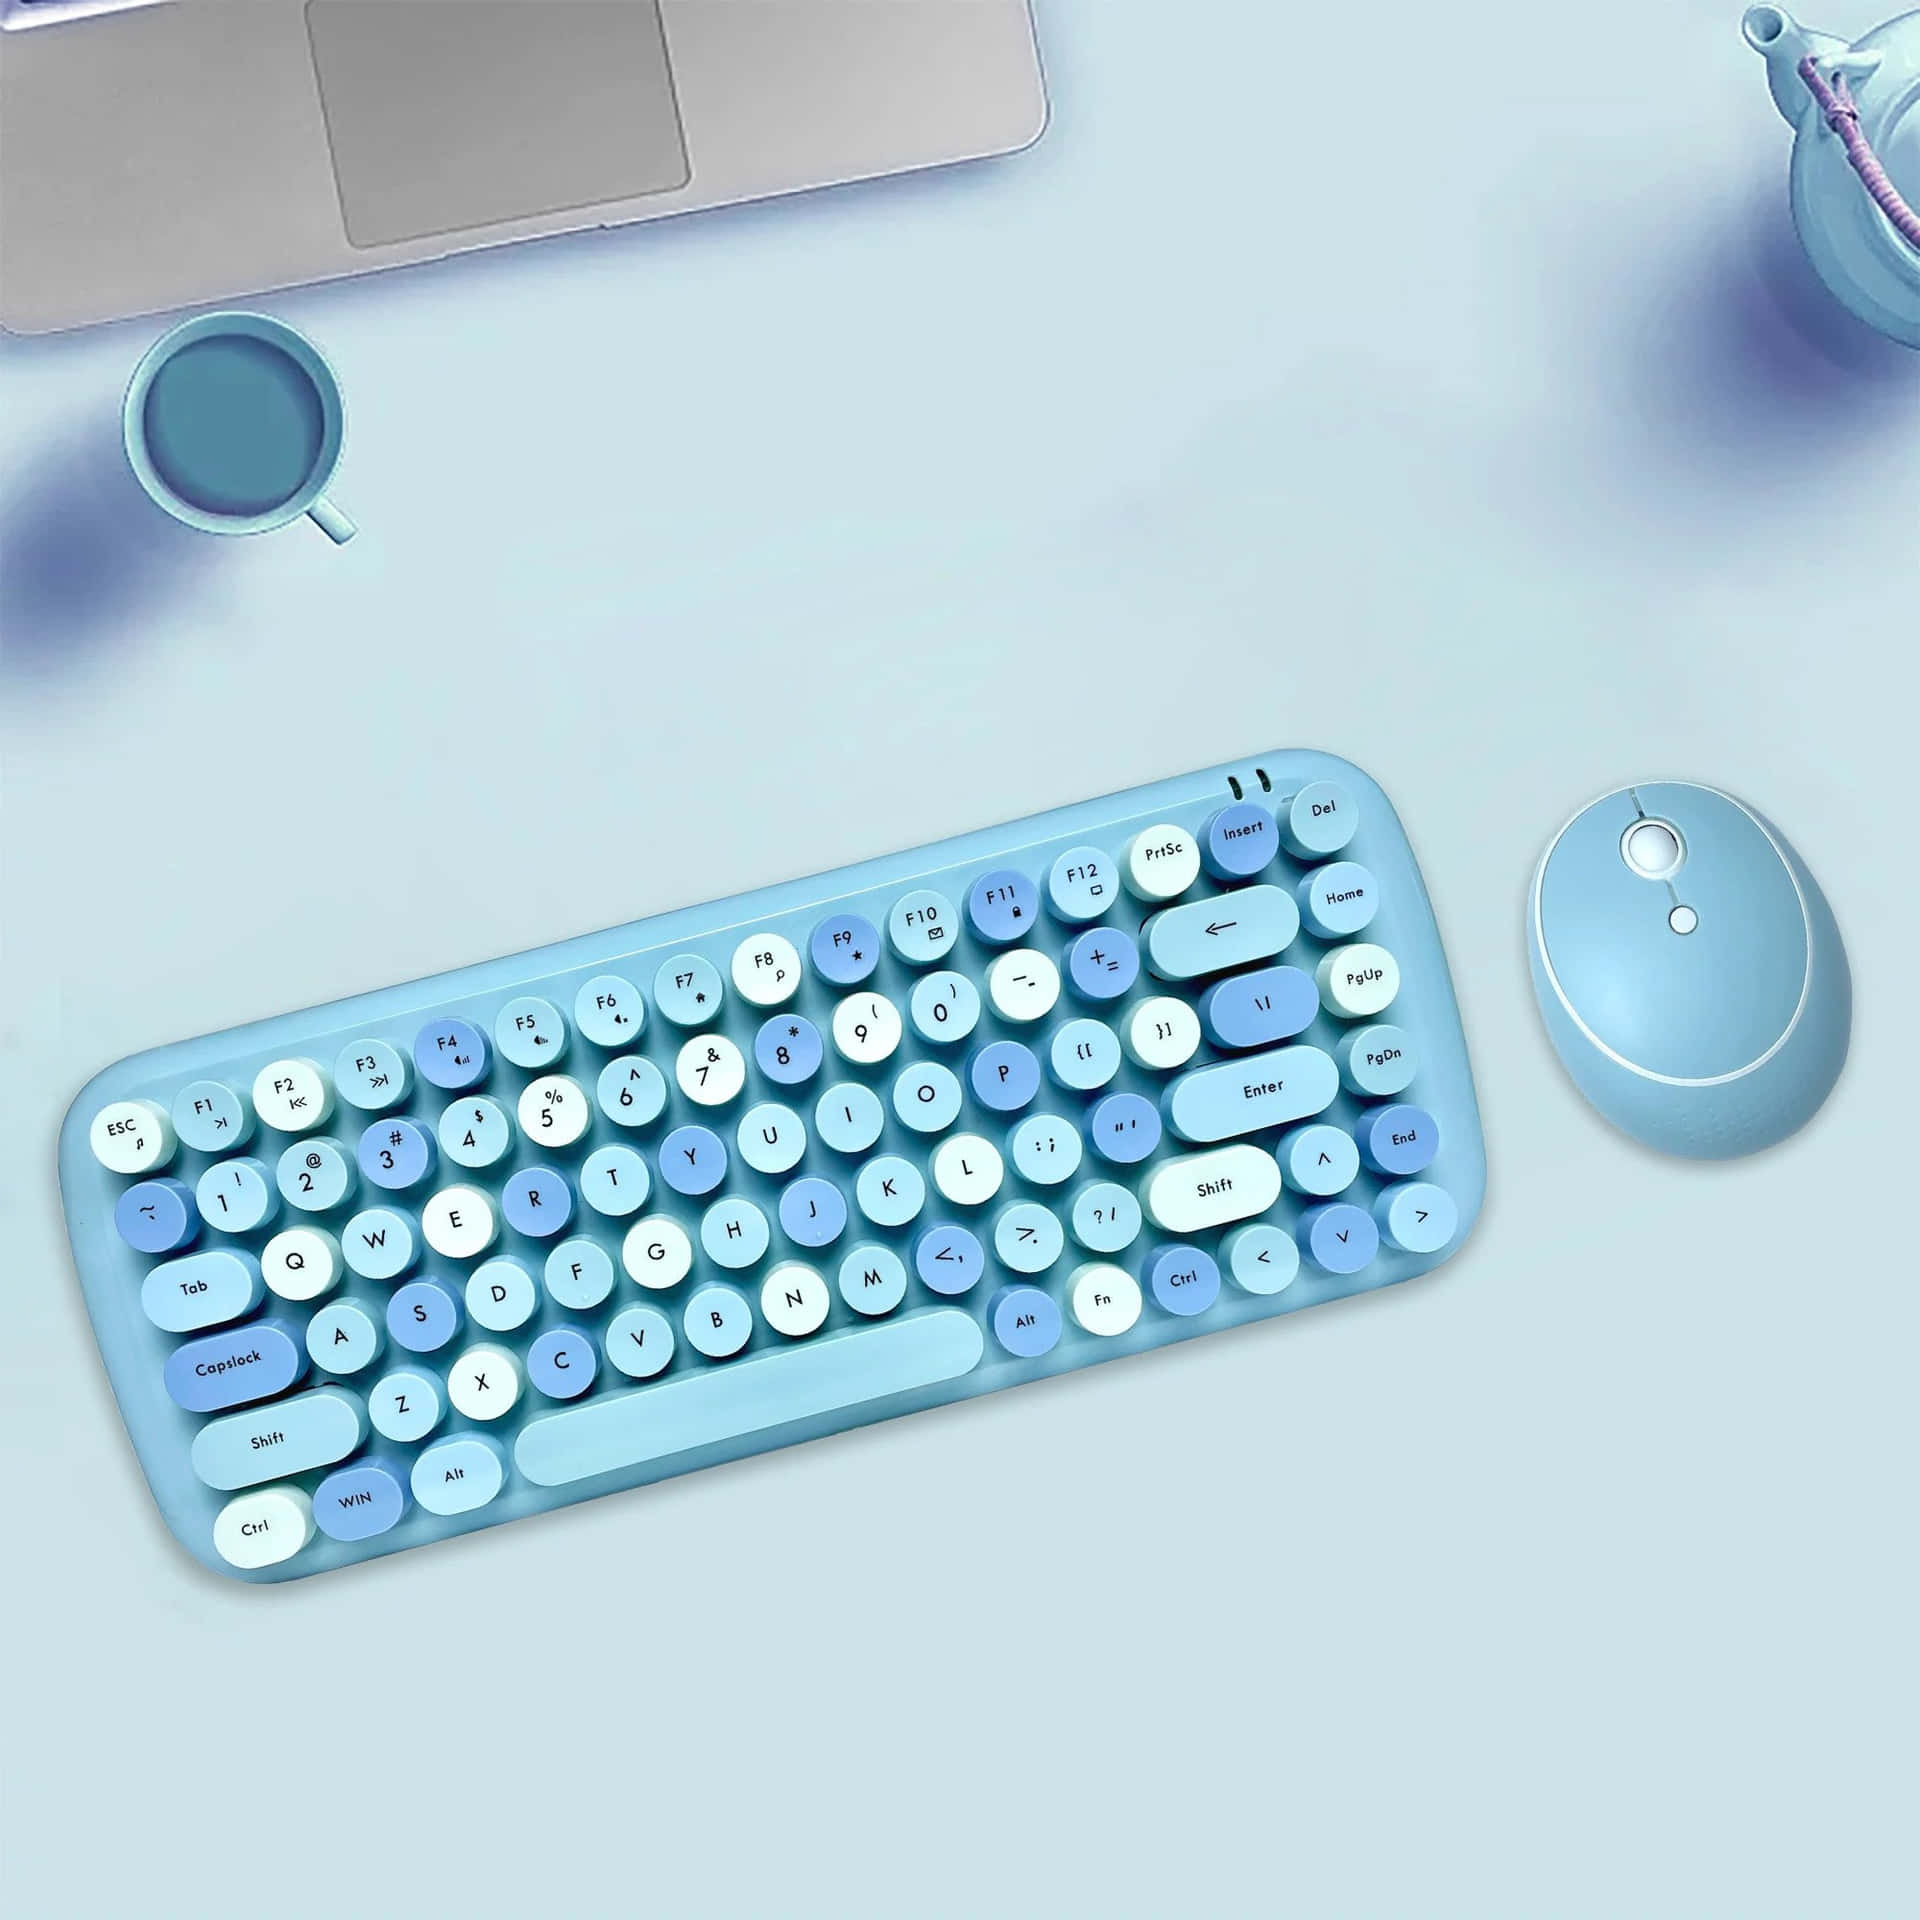 Eineblaue Tastatur Und Maus Auf Einem Tisch.